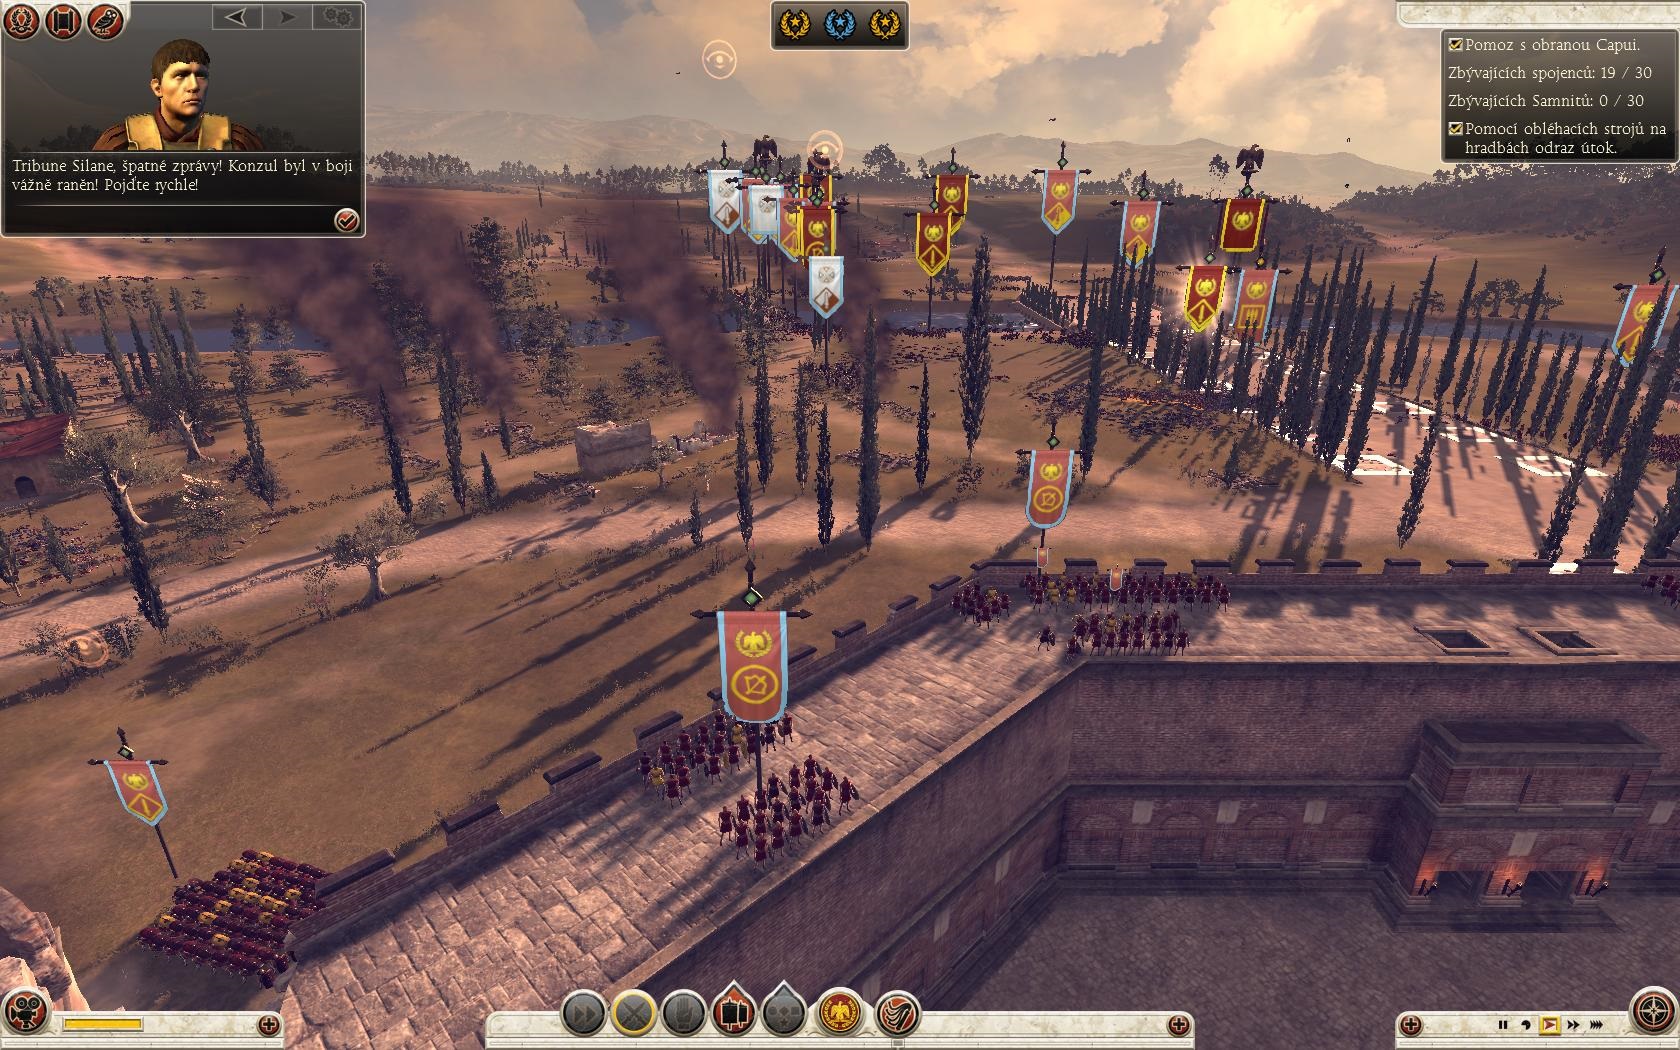 Total War: Rome II Obliehanie mesta sa nezaobíde bez ťažkých strát.